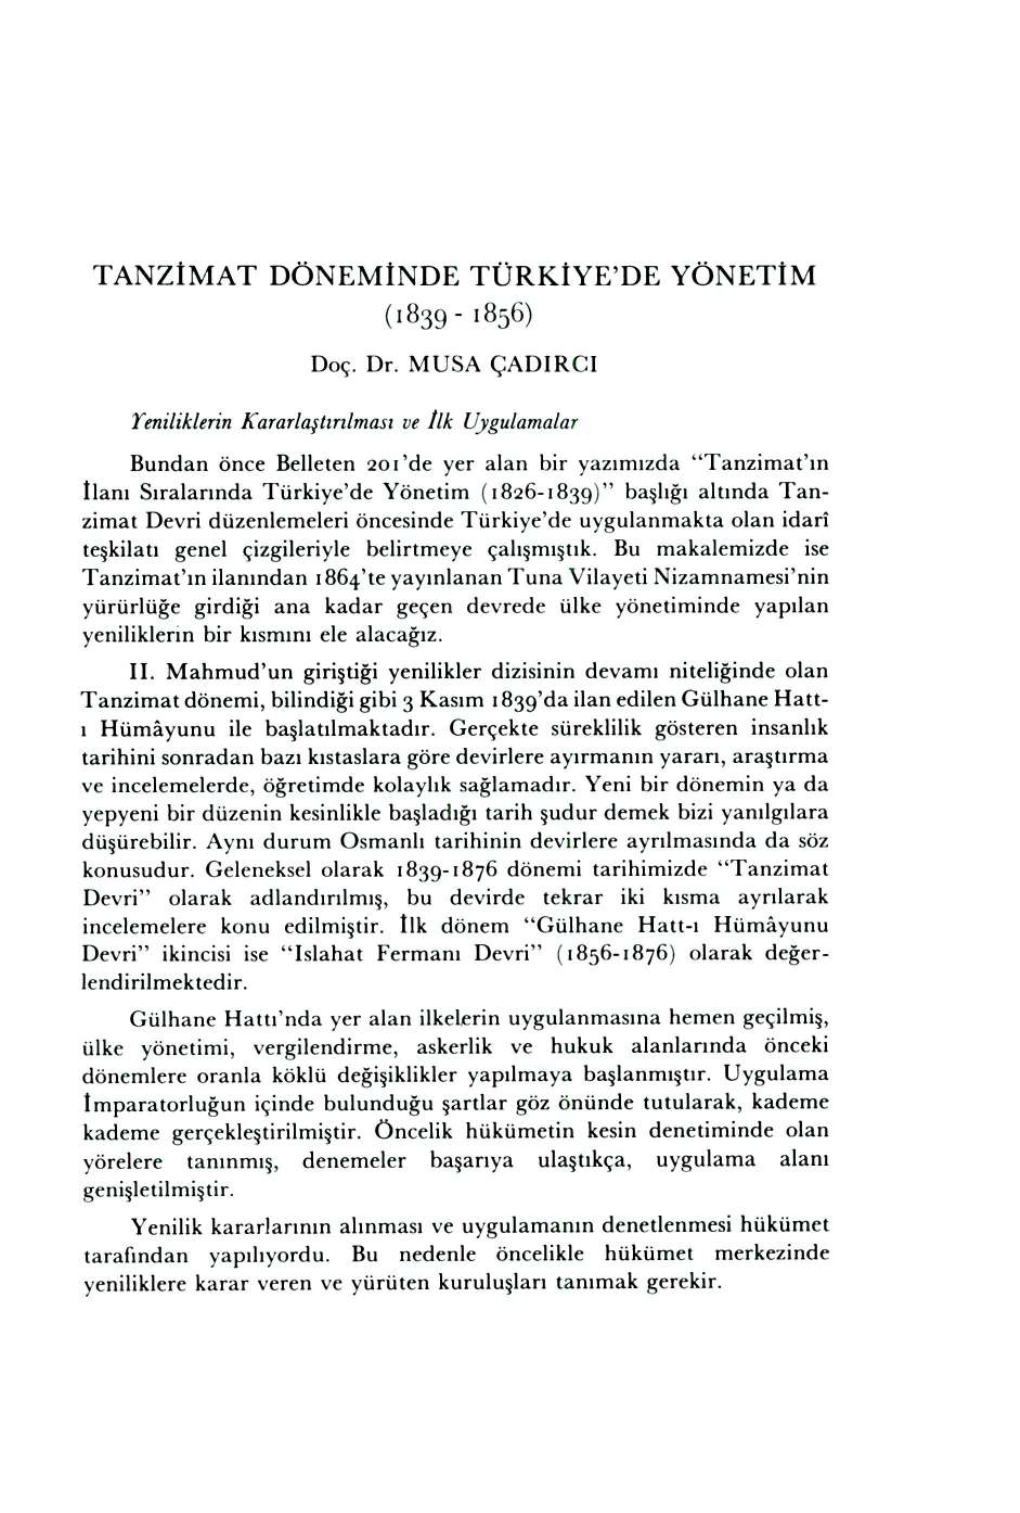 Tanzimat Döneminde Türkiye'de Yönetim (1839 - 1856)